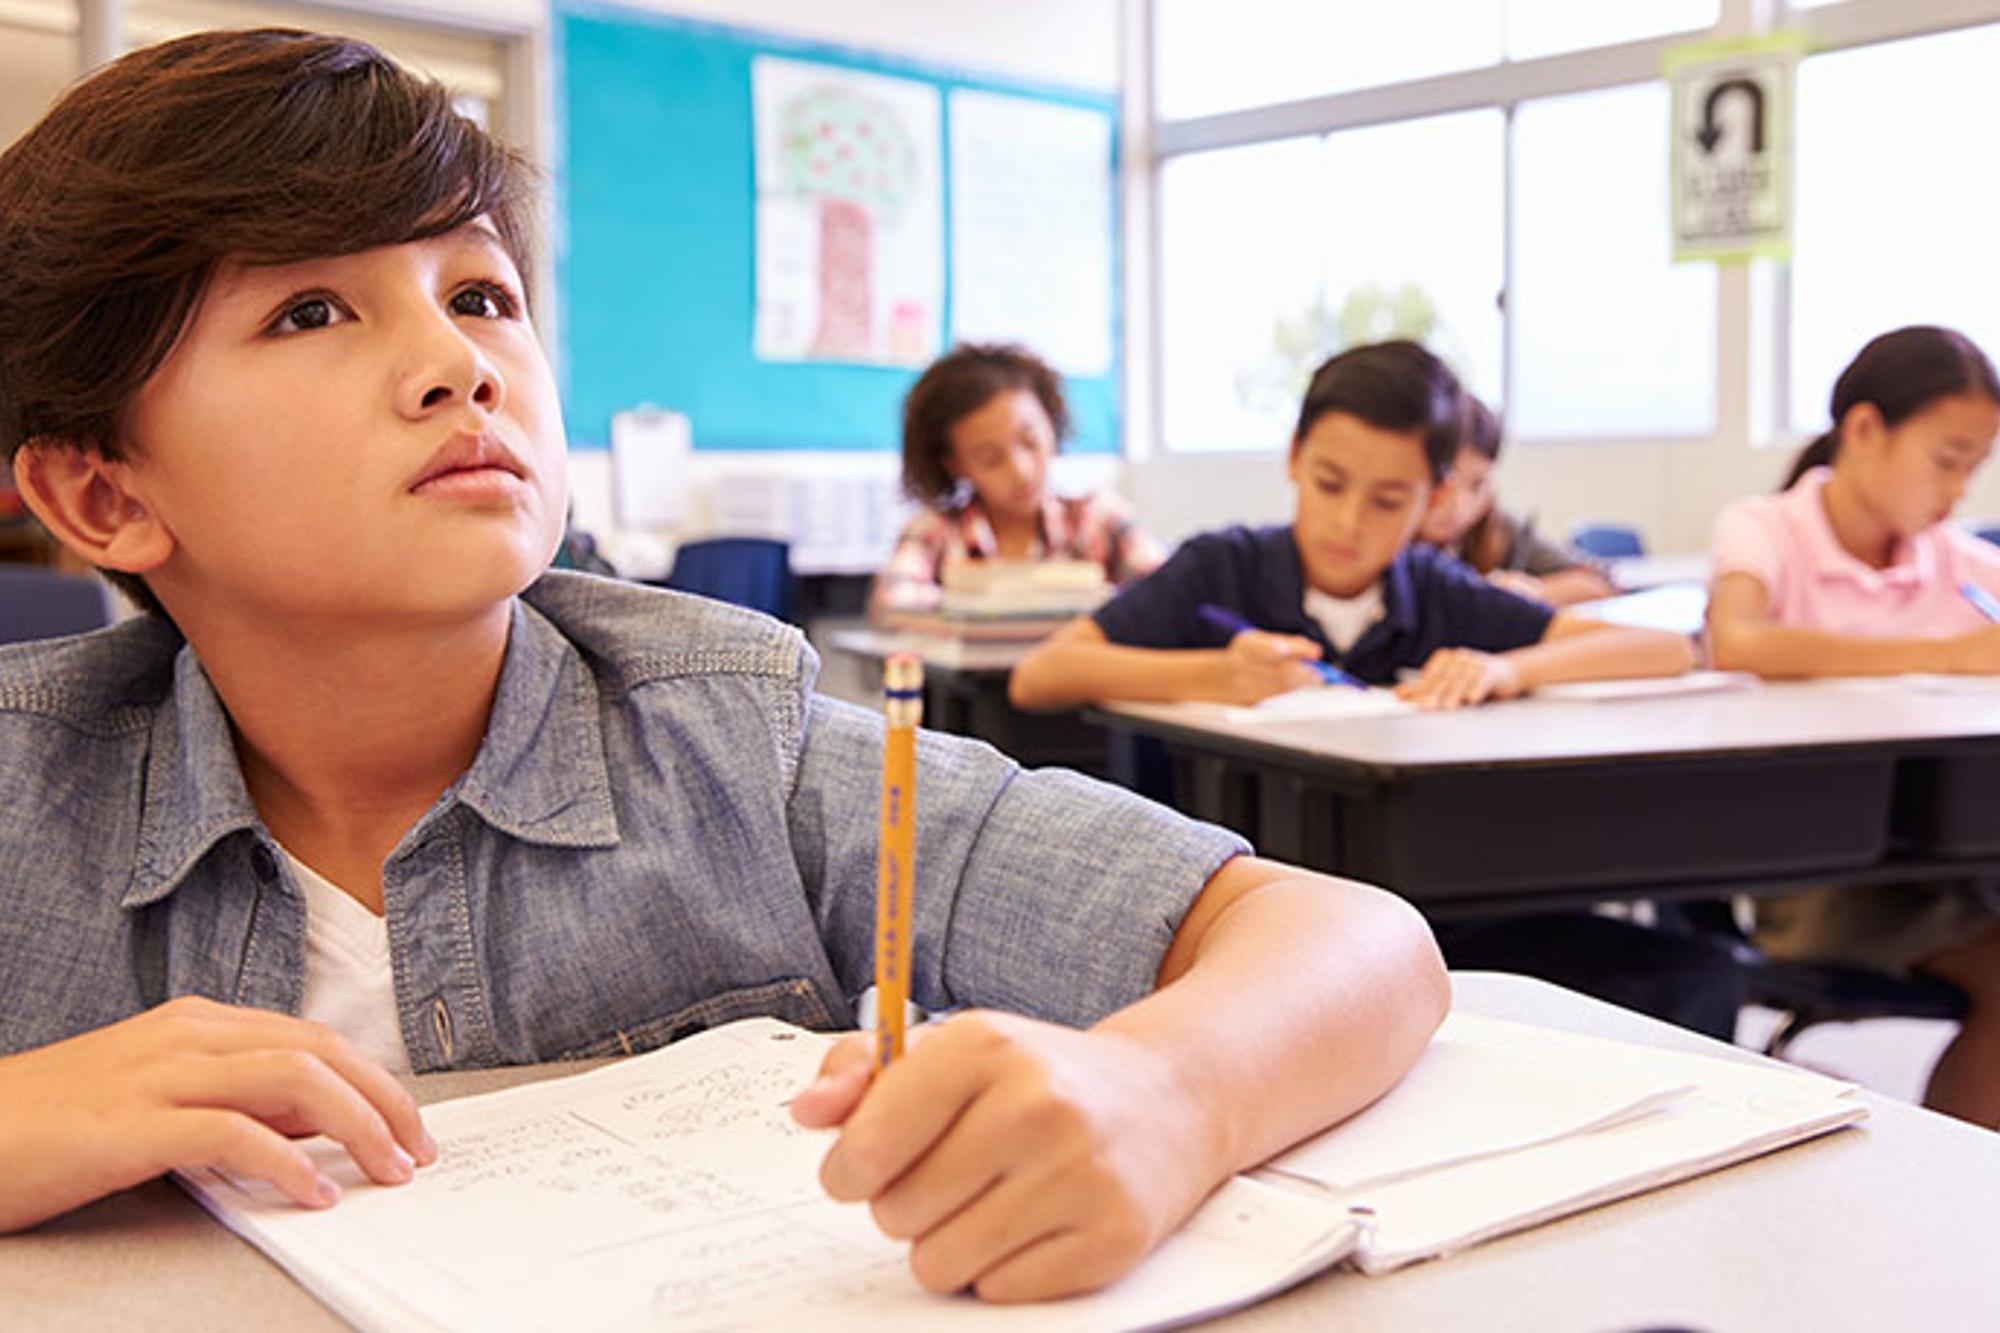 En pojke som sitter i ett klassrum och skriver i en skolbok. I bakgrunden syns andra elever som också antecknar.